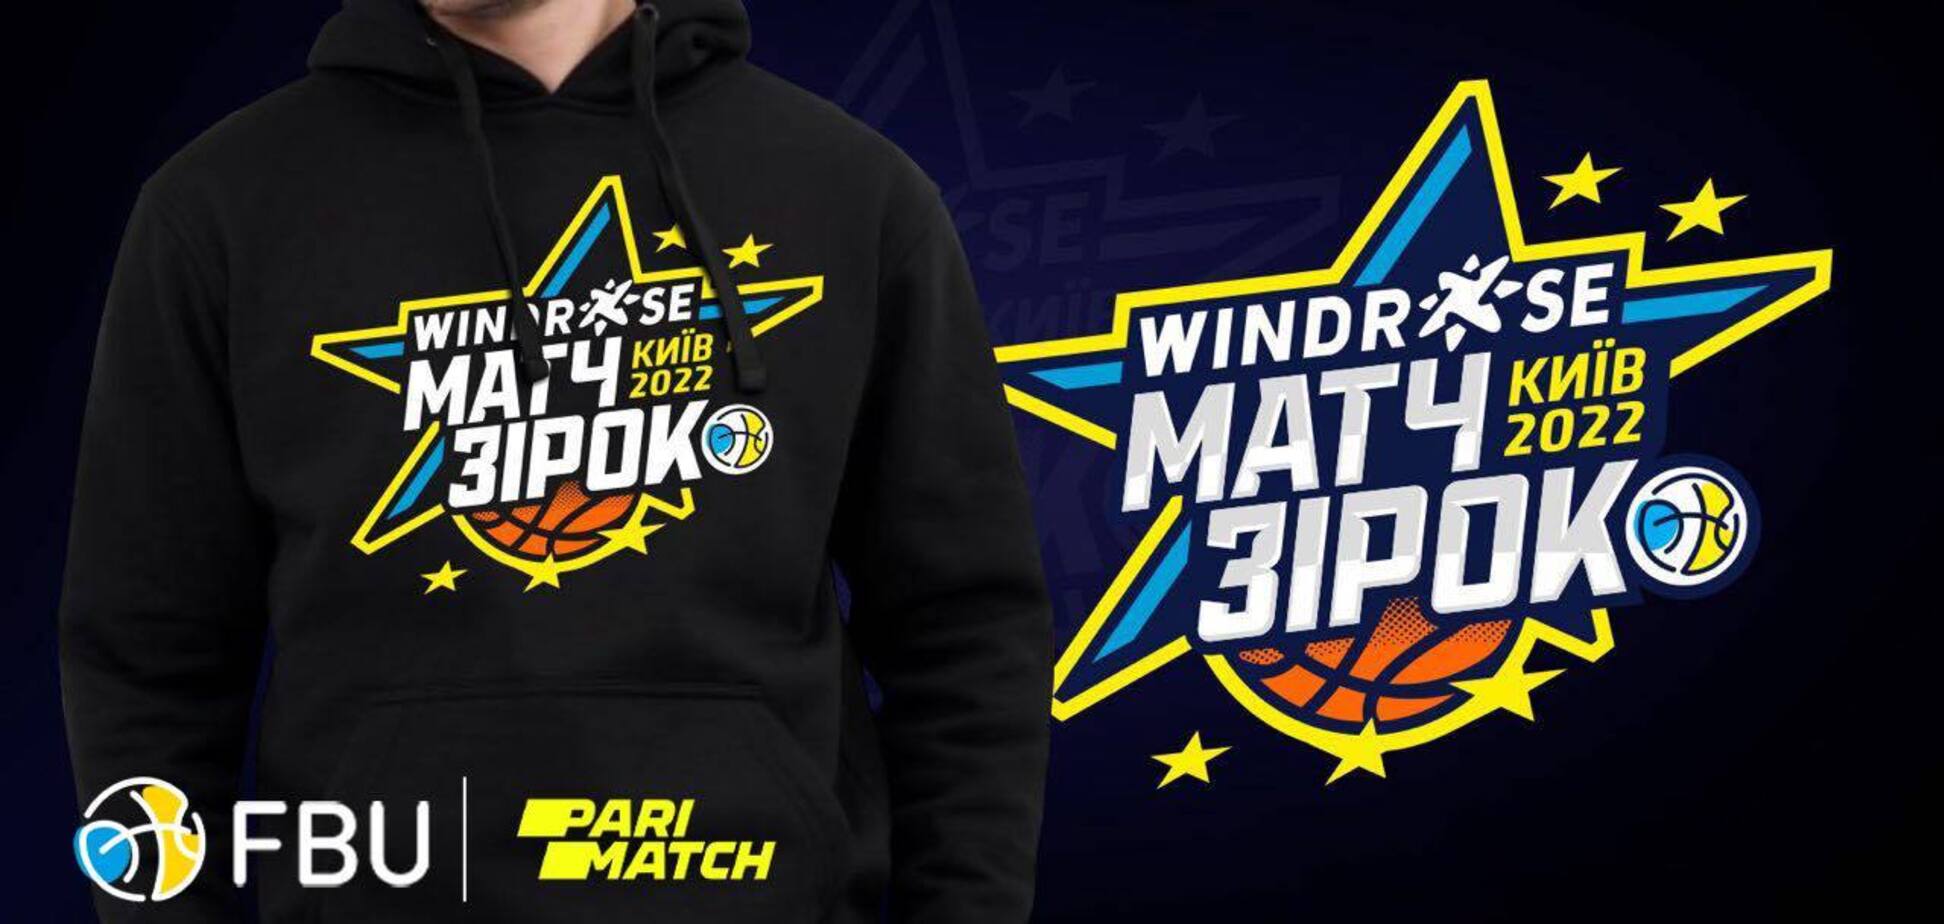 Матч зірок баскетбольної Суперліги Windrose отримав логотип